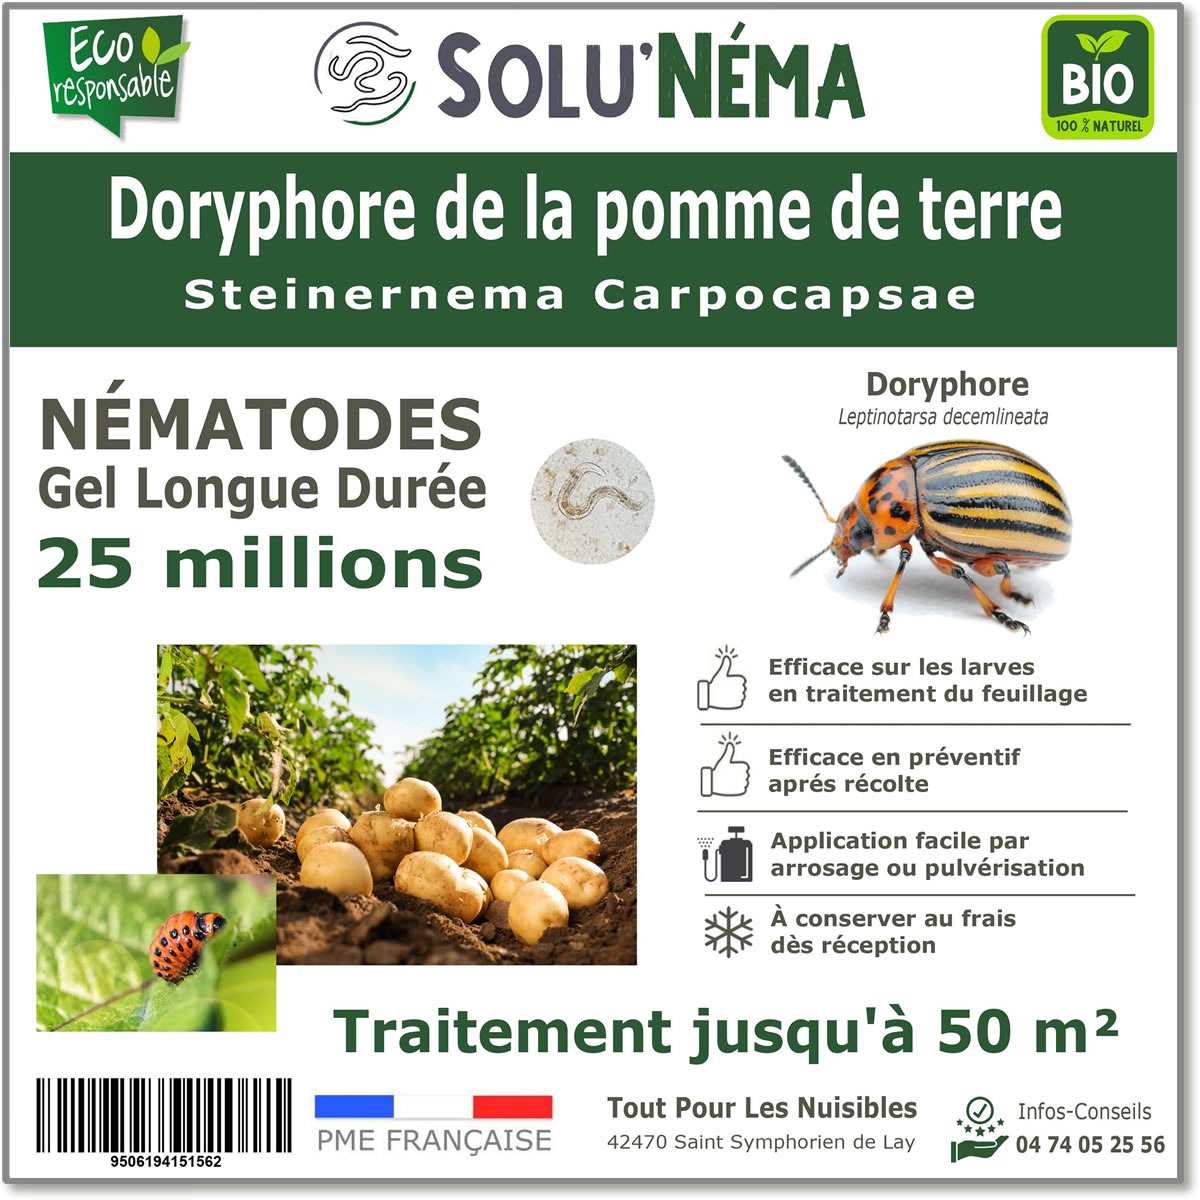 25 millions de nématodes pour traiter les larves de doryphore de la pomme de terre